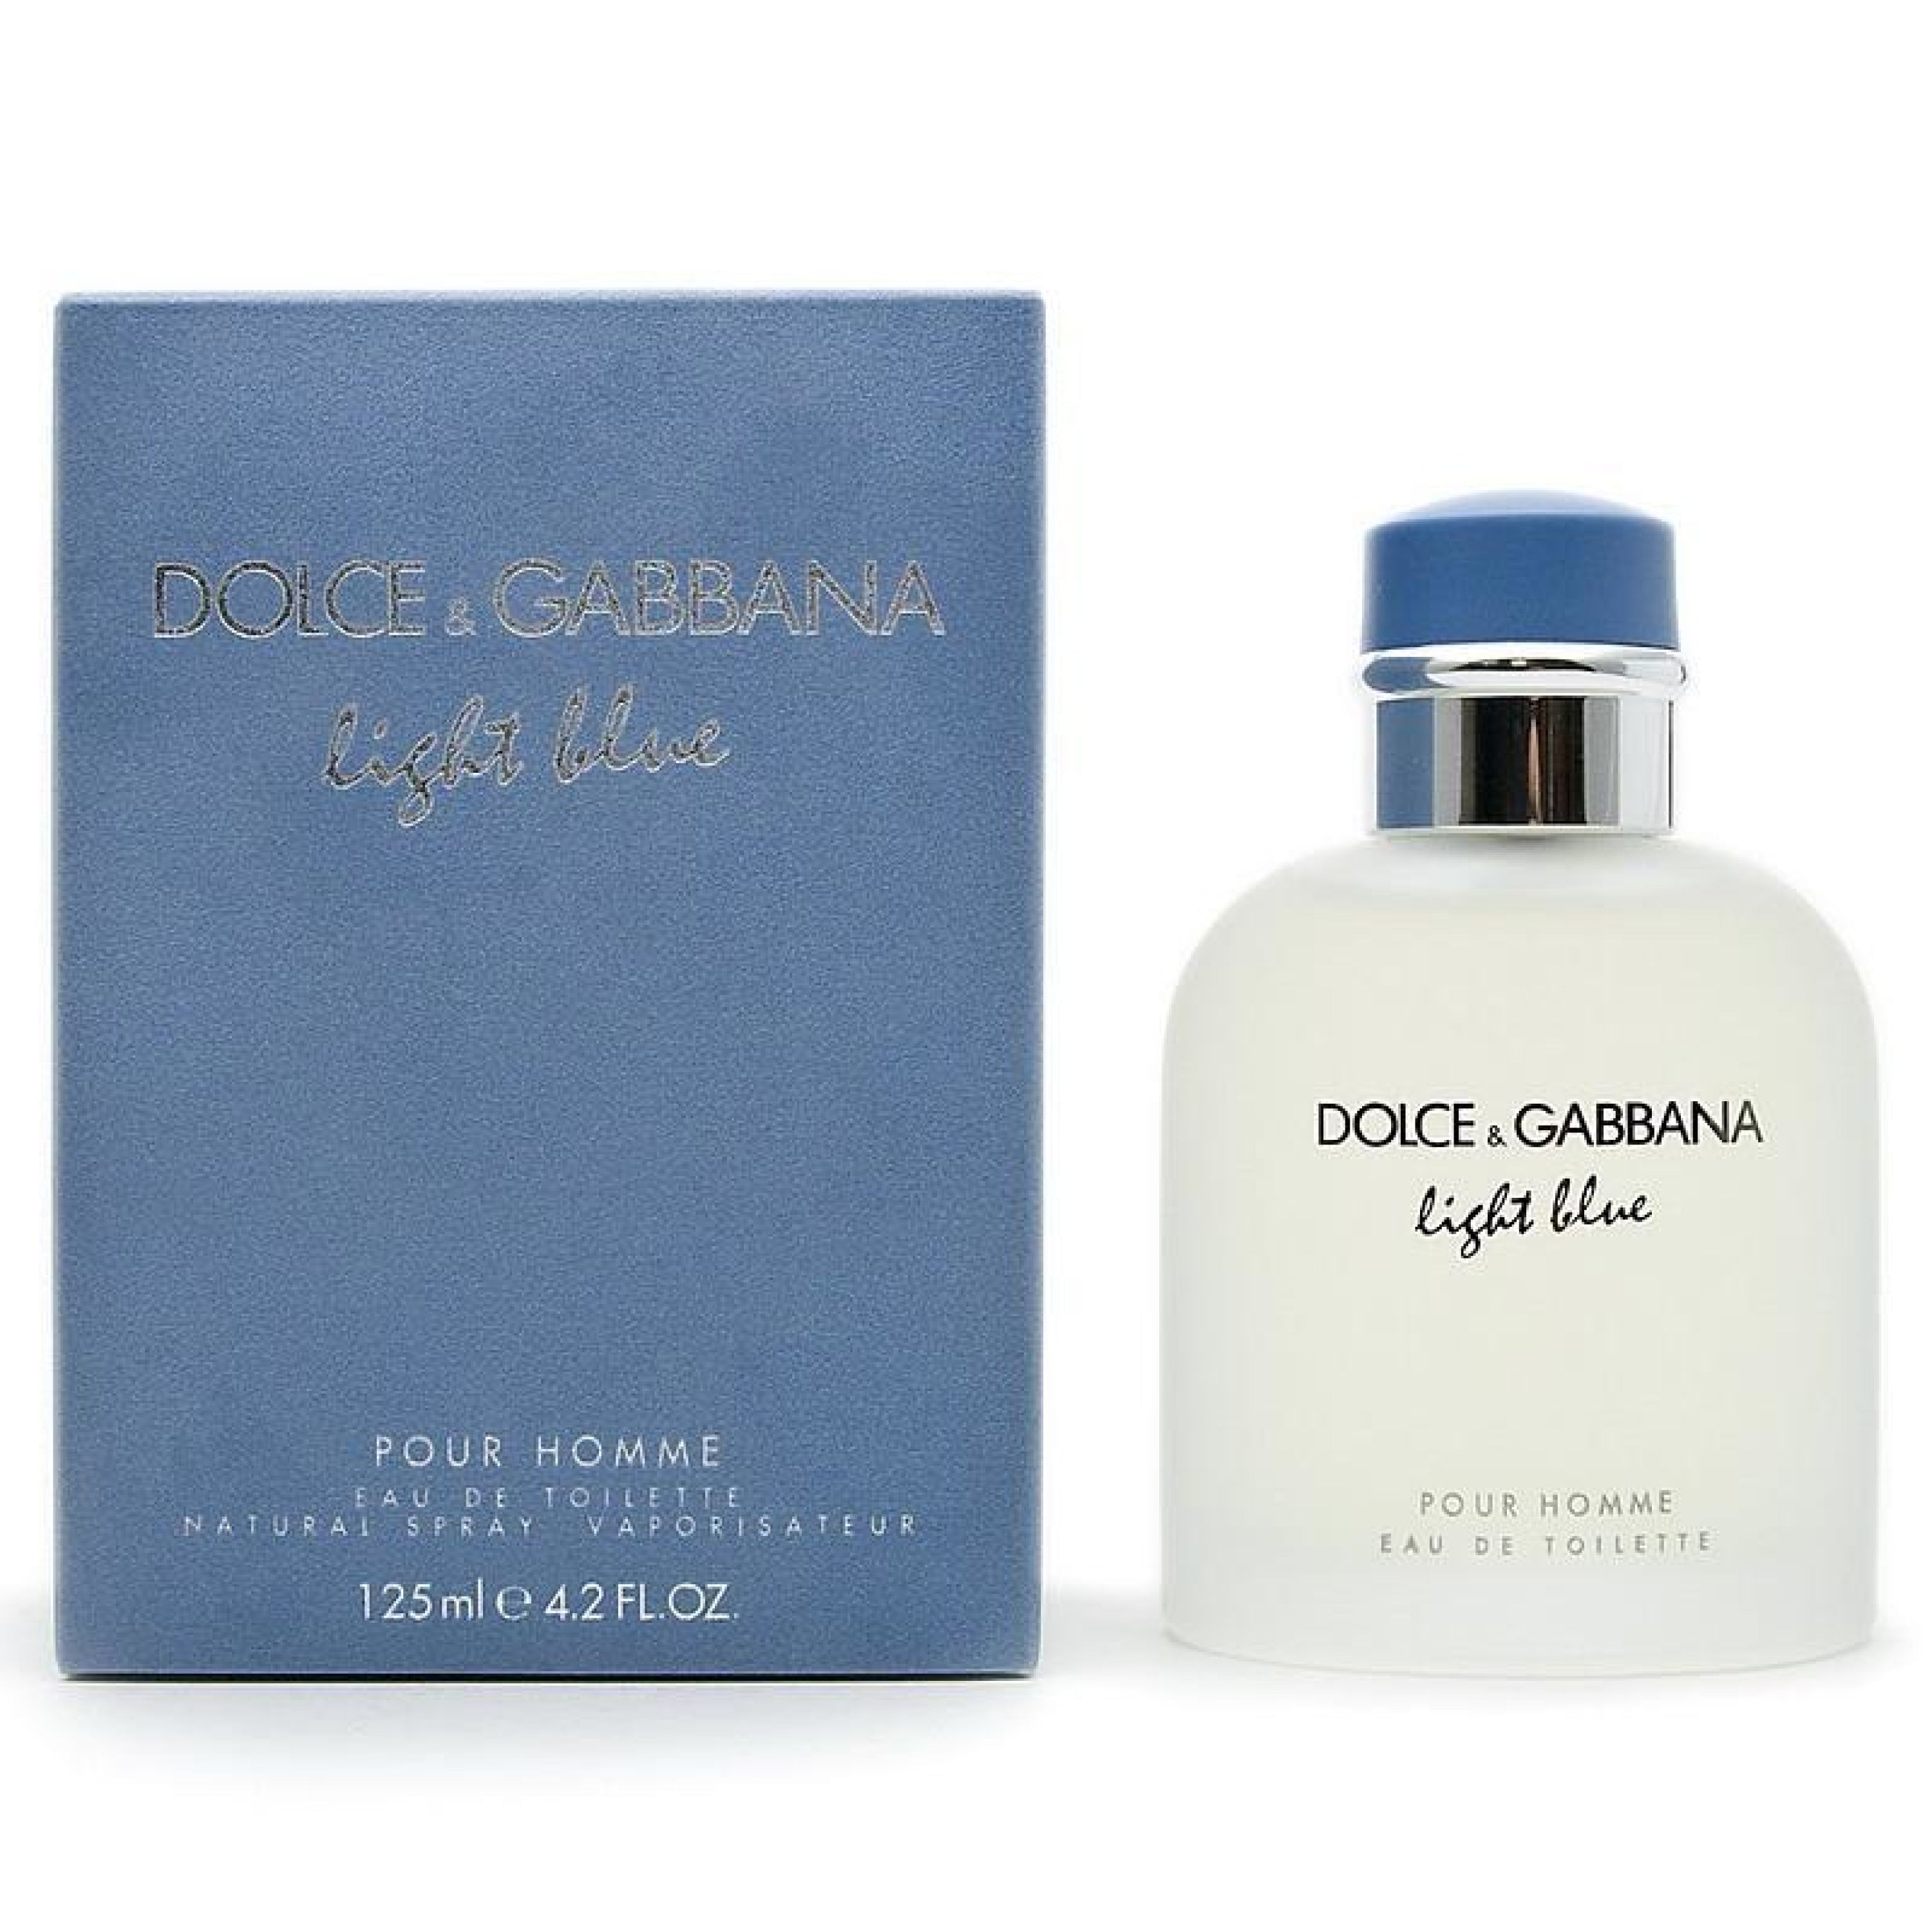 Dolce gabbana light blue аромат. Dolce Gabbana Light Blue 125ml. Дольче Габбана "Light Blue pour homme" 125 ml. Dolce & Gabbana Light Blue pour homme EDT, 125 ml. Dolce Gabbana Light Blue pour homme.